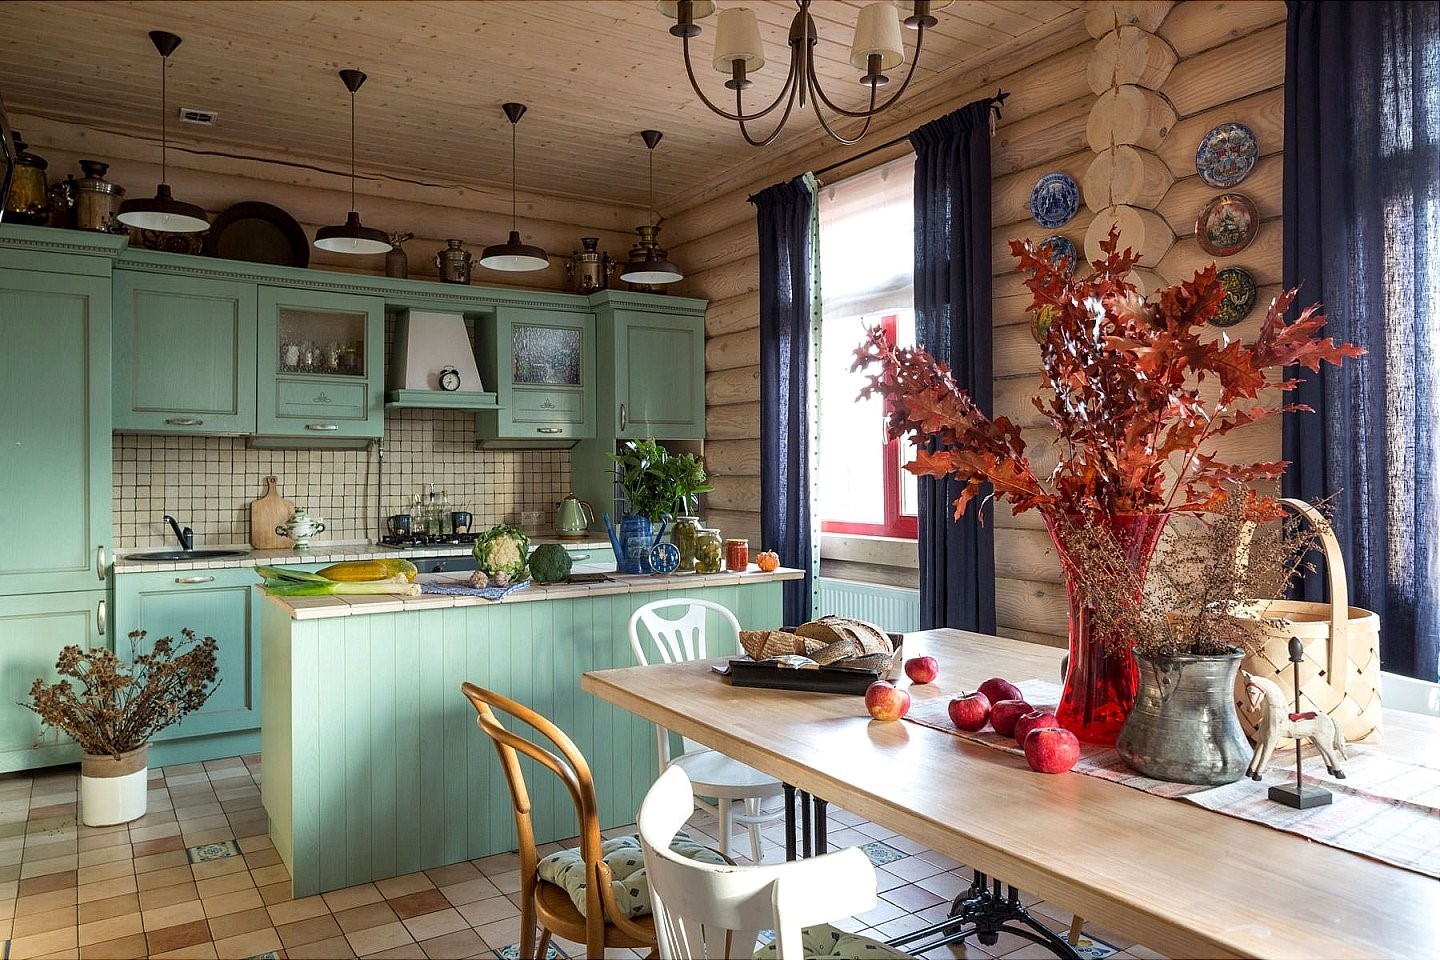 Стиль рустик в интерьере: кухня и мебель в рустикальном стиле, стол - деревенский уют для загородного дома